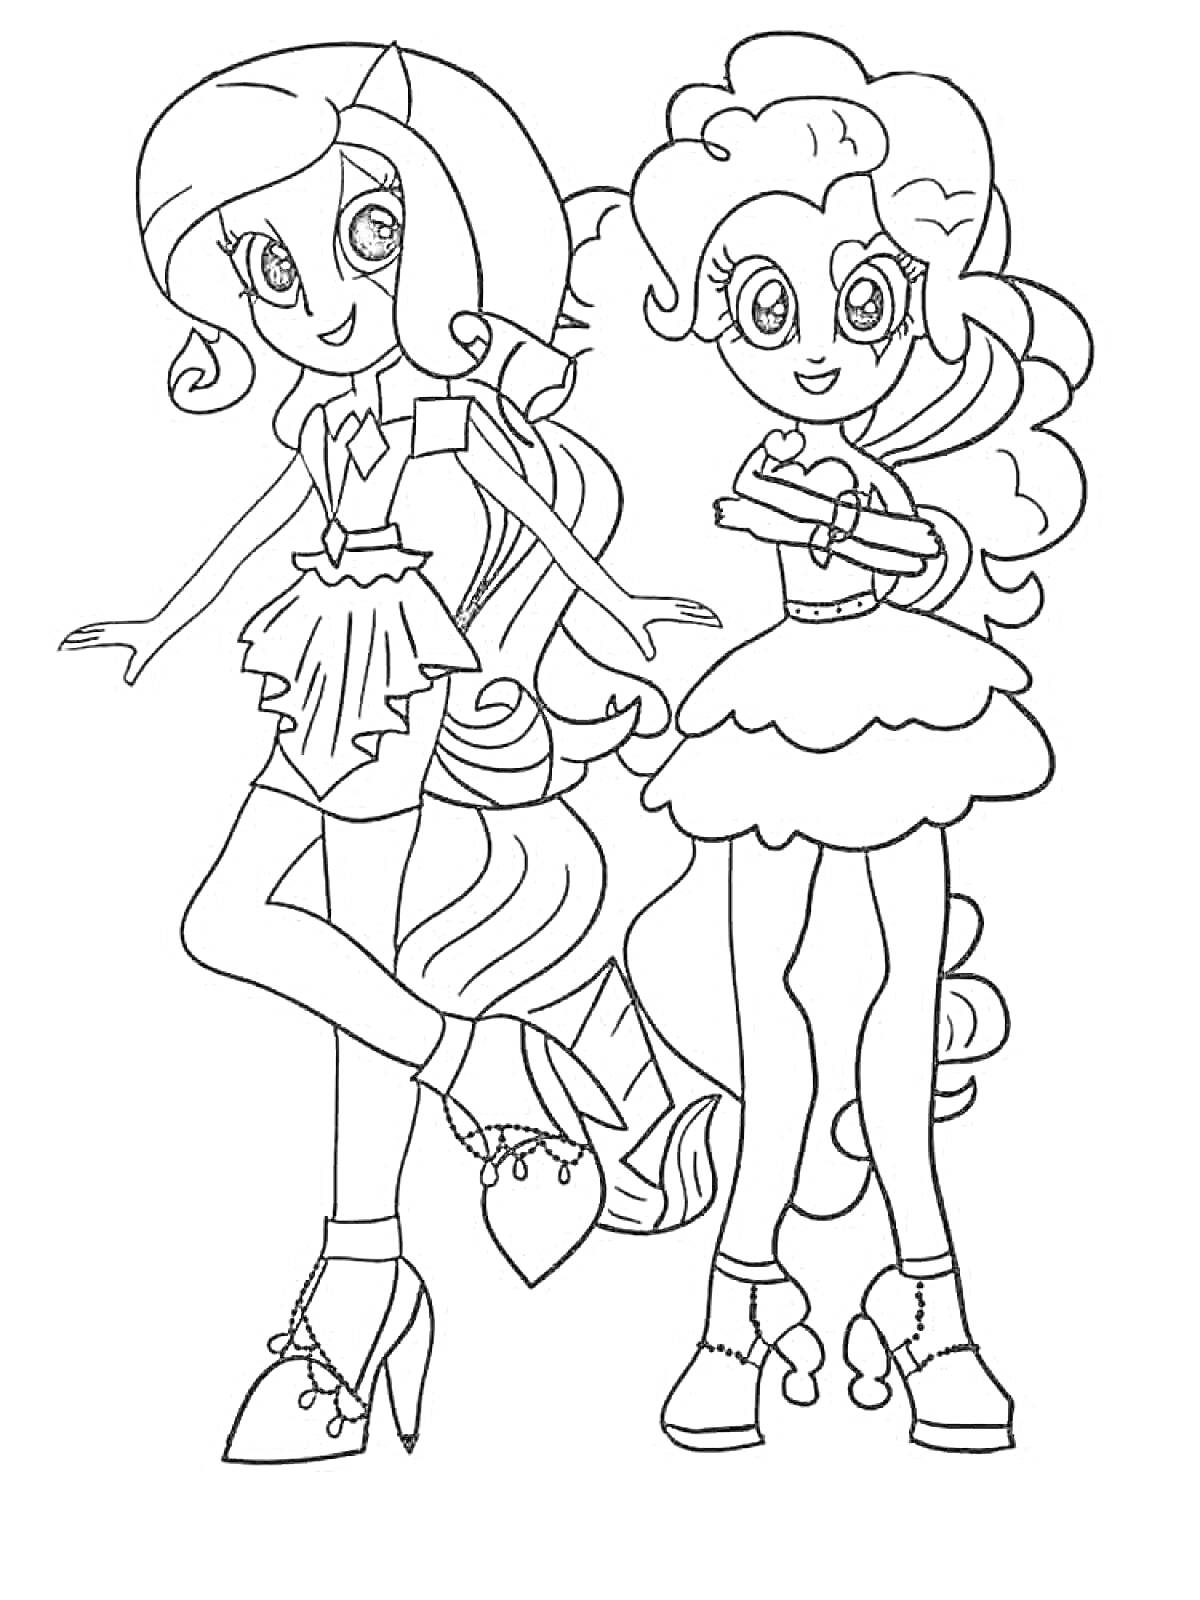 Раскраска Две девушки из Эквестрии Герлз, одна с длинными волнистыми волосами и юбкой со складками, другая с кудрявыми волосами и пышной юбкой.